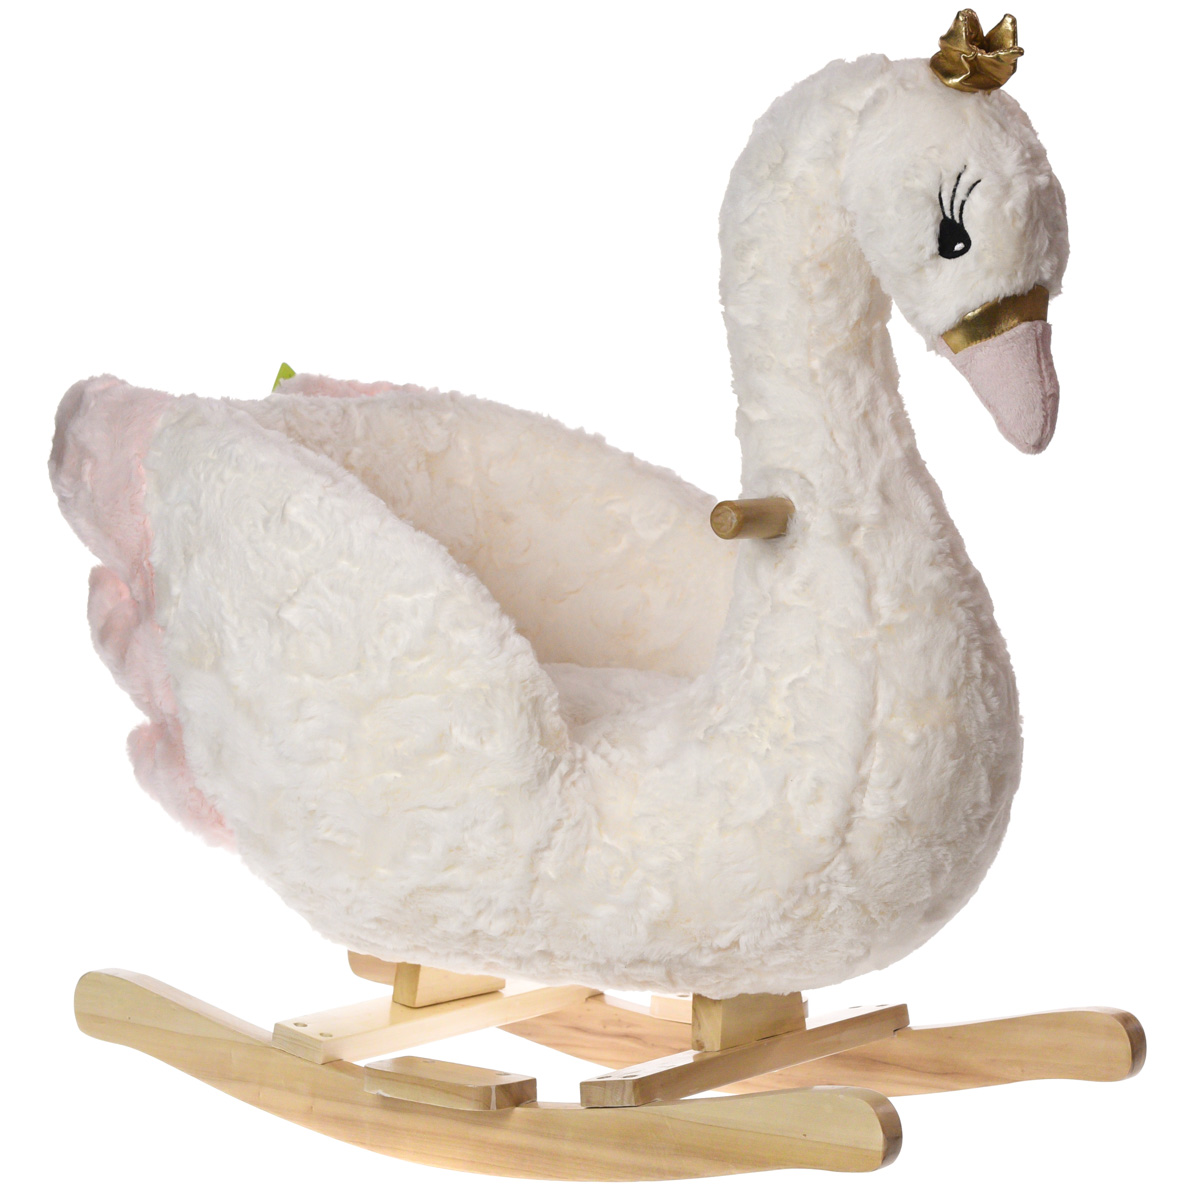 Swan Rocker Ride-On Toy - Cracker Barrel